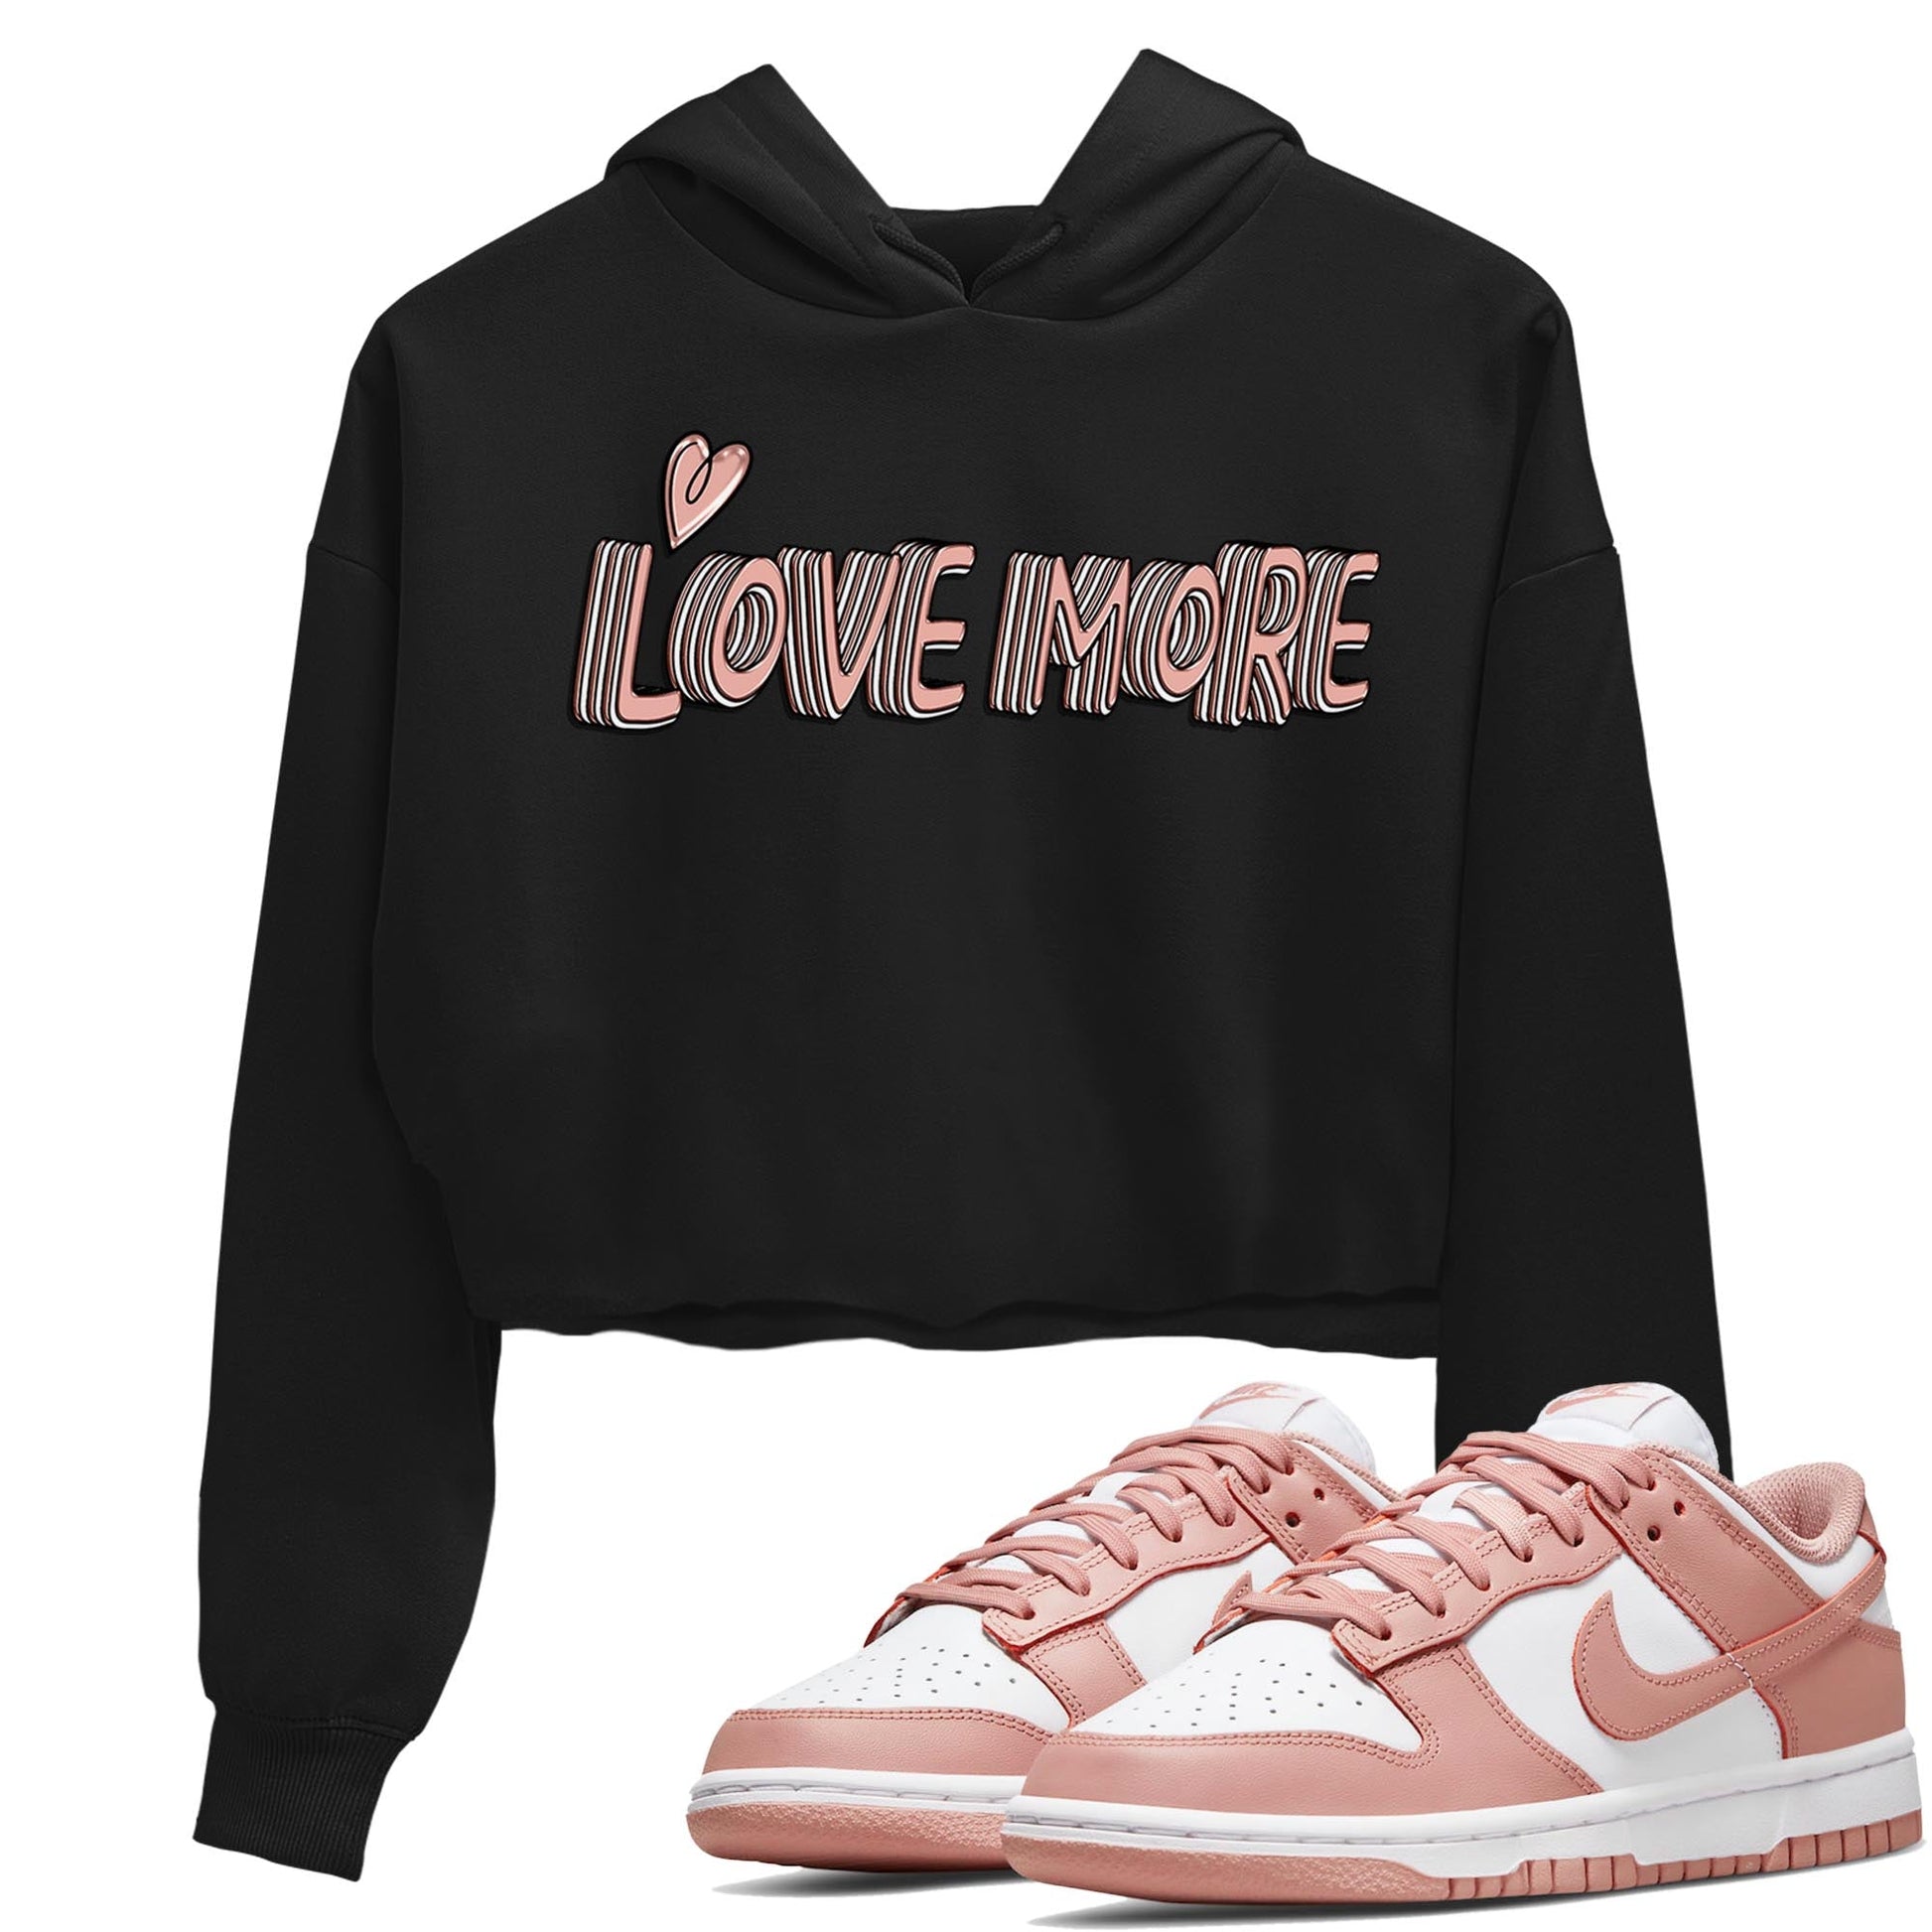 Nike Dunks Low Rose Whisper shirt to match jordans Love More Streetwear Sneaker Shirt Nike Dunk Rose Whisper Drip Gear Zone Sneaker Matching Clothing Black 1 Crop T-Shirt